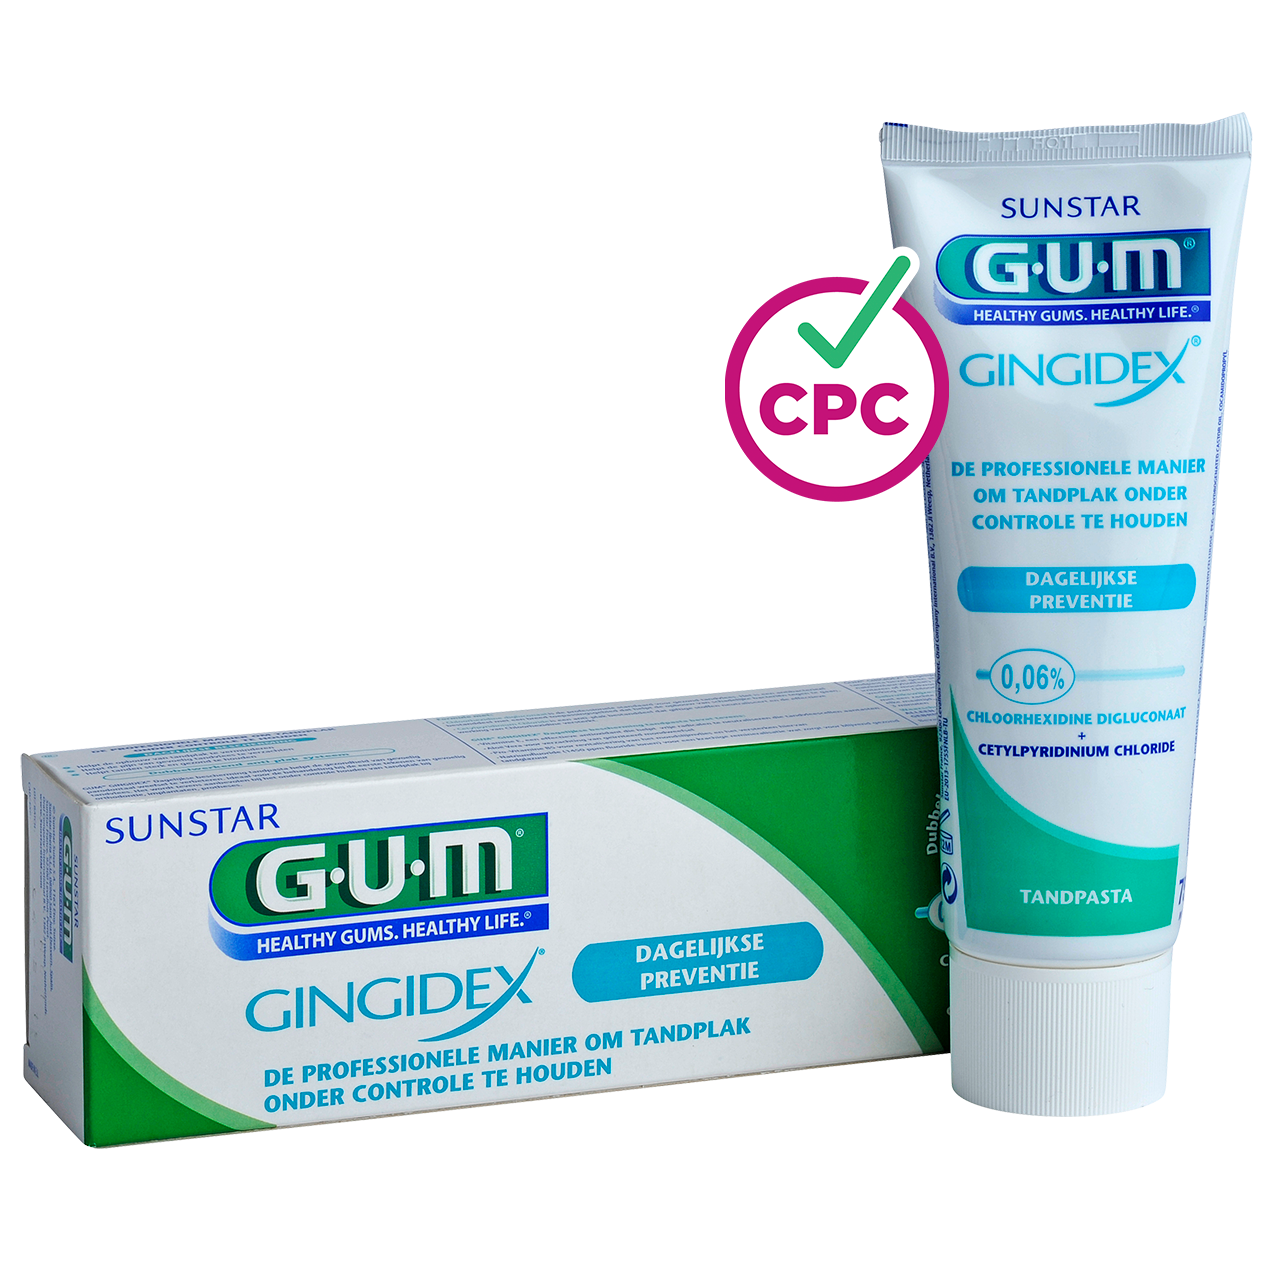 GUM GINGIDEX 0,06% Chloorhexidine Tandpasta